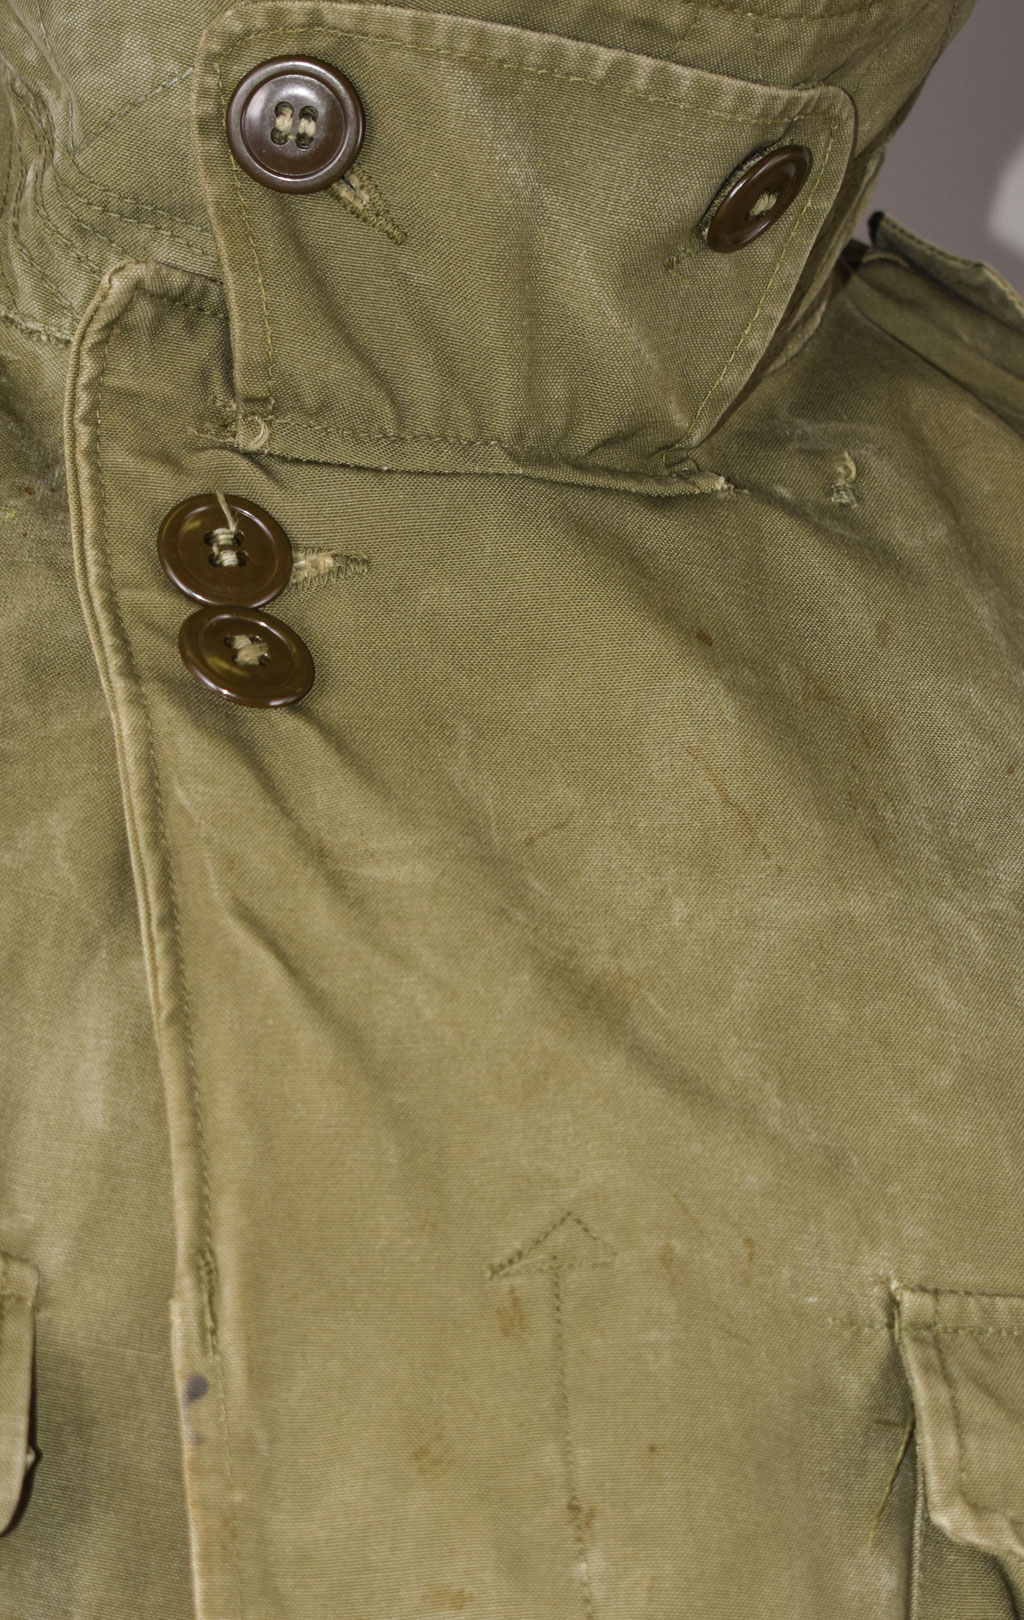 Куртка M-1950 Vietnam-Korea ERA olive б/у США